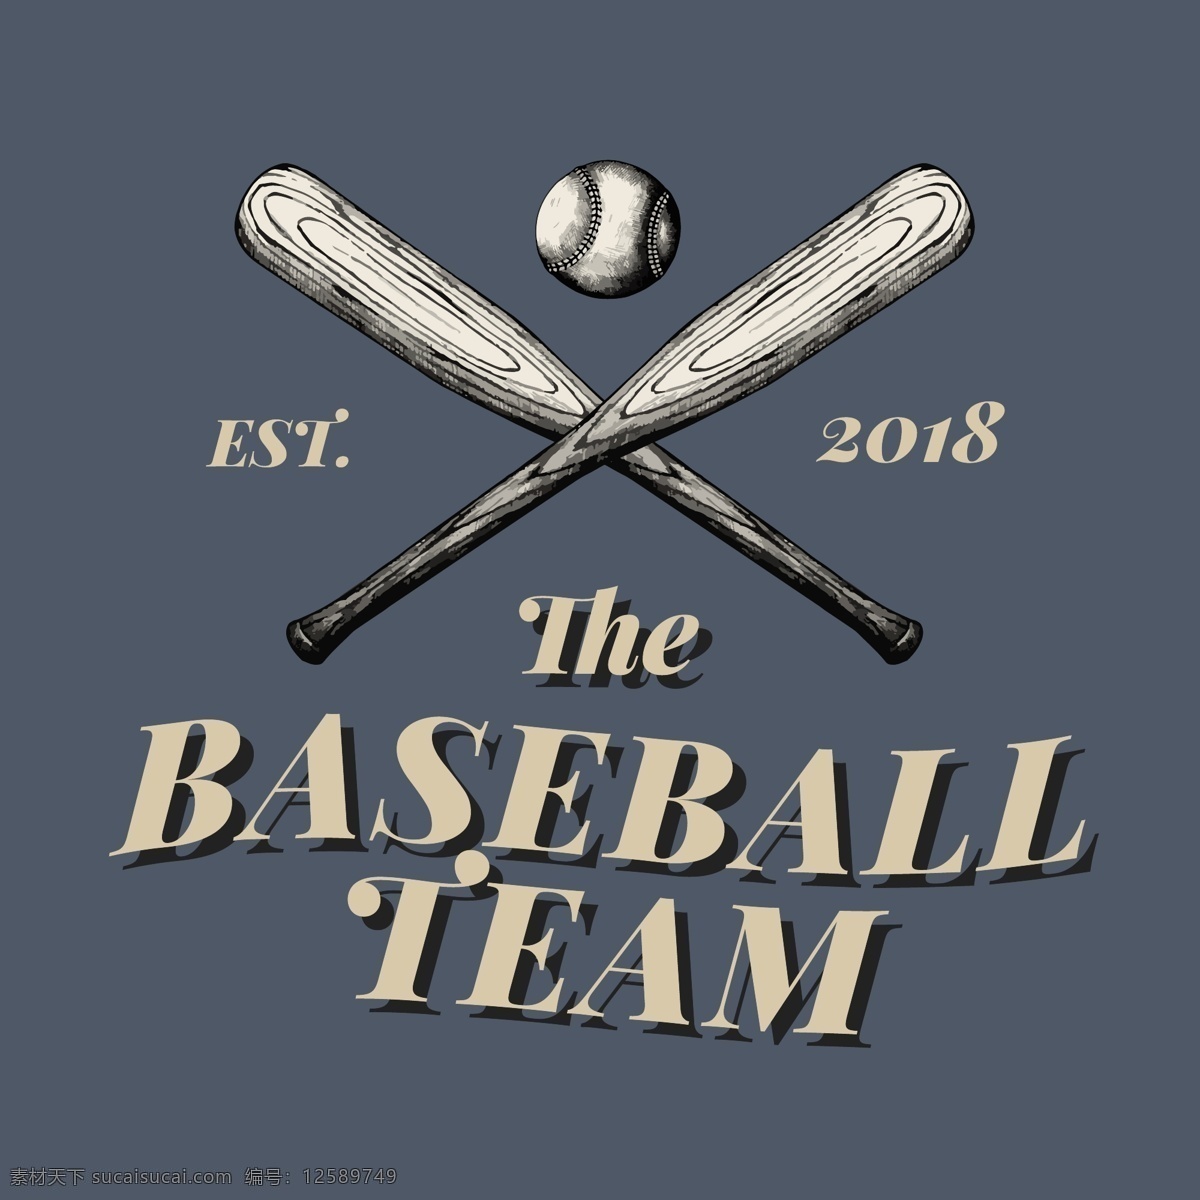 矢量棒球 卡通棒球 手绘棒球 棒球插画 线条棒球 棒球速写 体育运动项目 体育用品 生活百科